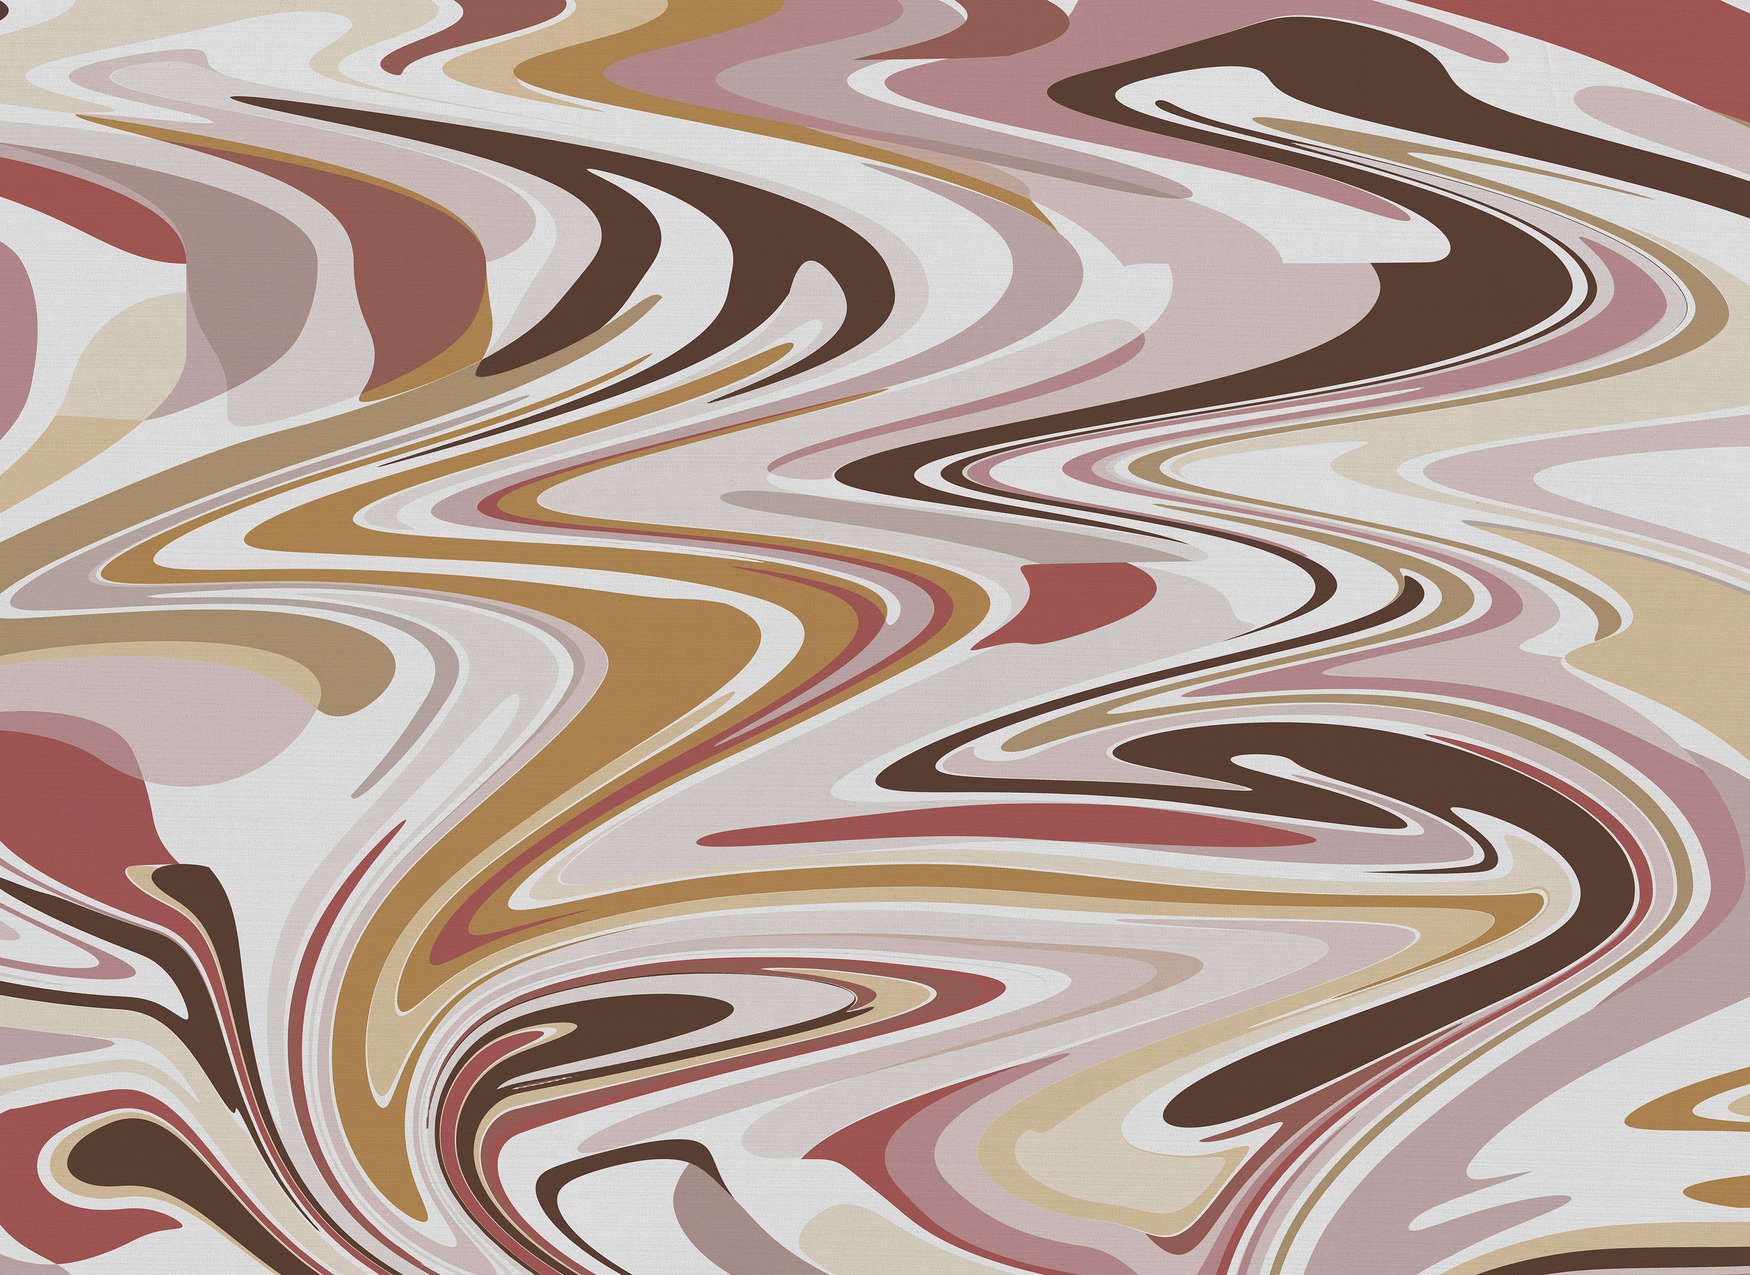             Papier peint aux motifs abstraits dans des tons chauds - rose, beige, rouge
        